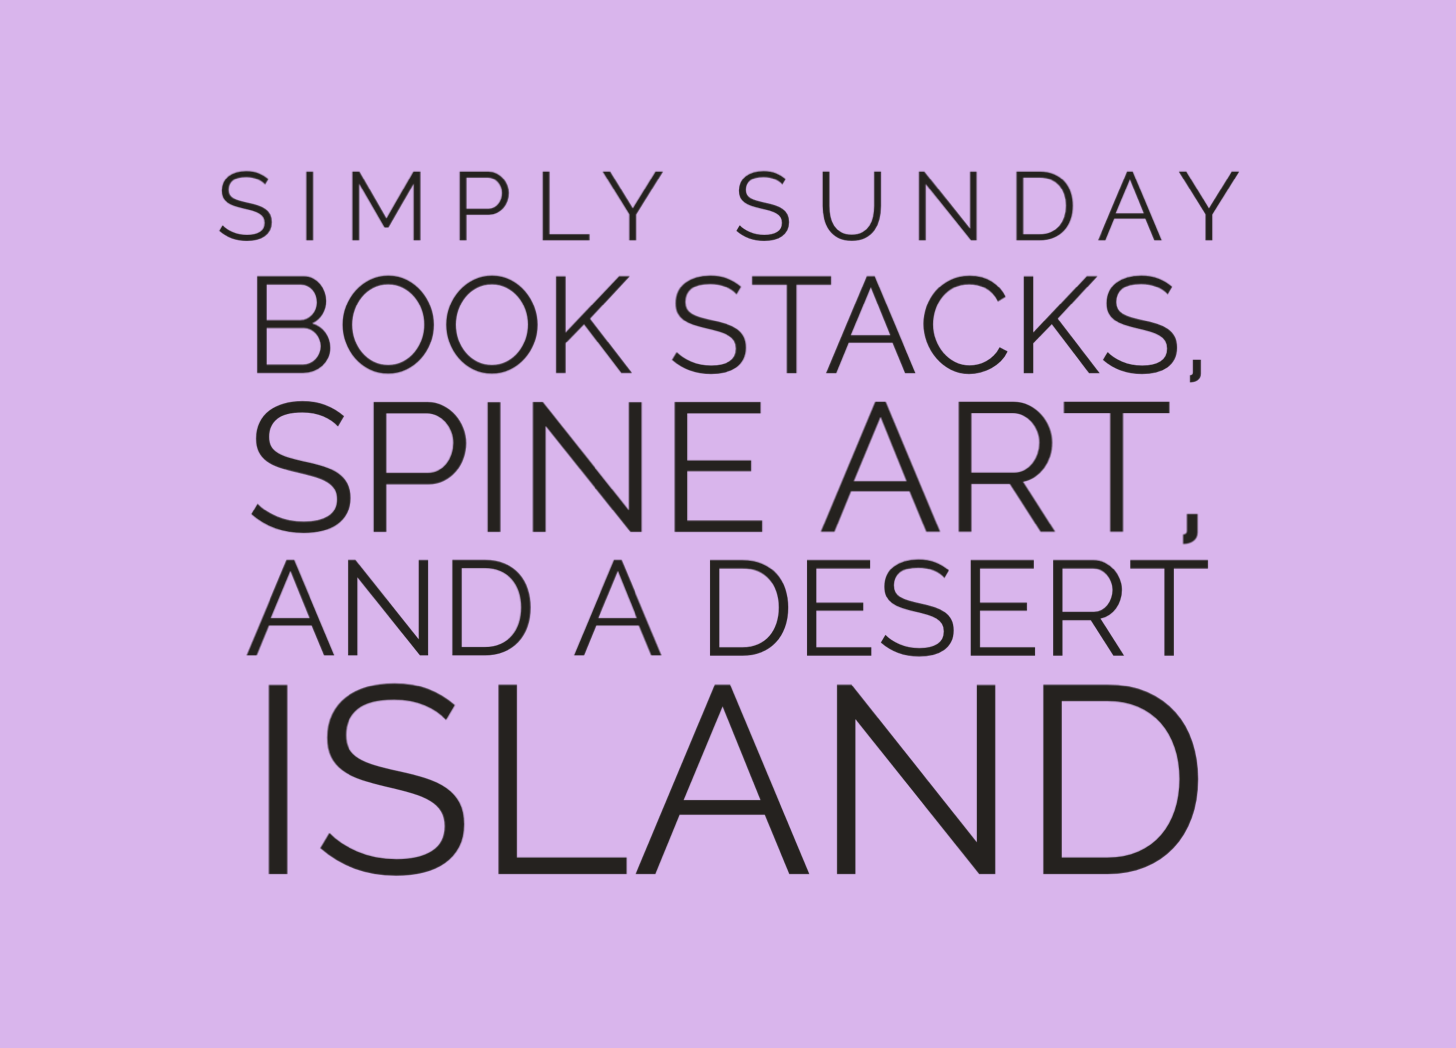 Book lists, spine art, and a desert island